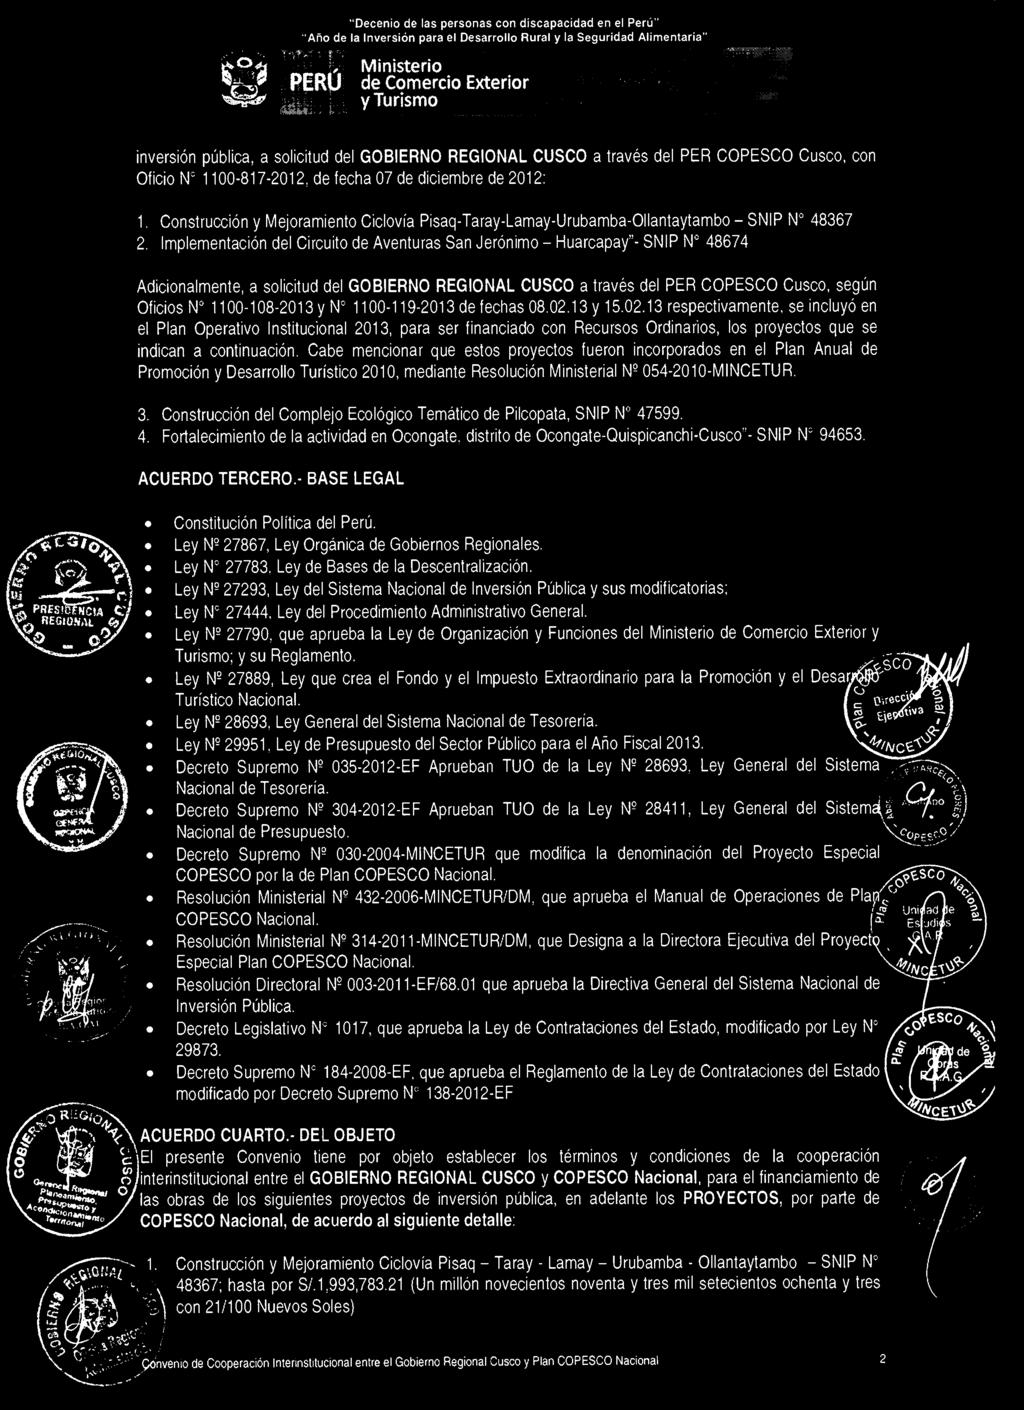 Implementación del Circuito de Aventuras San Jerónimo Huarcapay"- SNIP N 48674 Adicionalmente, a solicitud del GOBIERNO REGIONAL CUSCO a través del PER COPESCO Cusco, según Oficios N 1100-108-2013 y